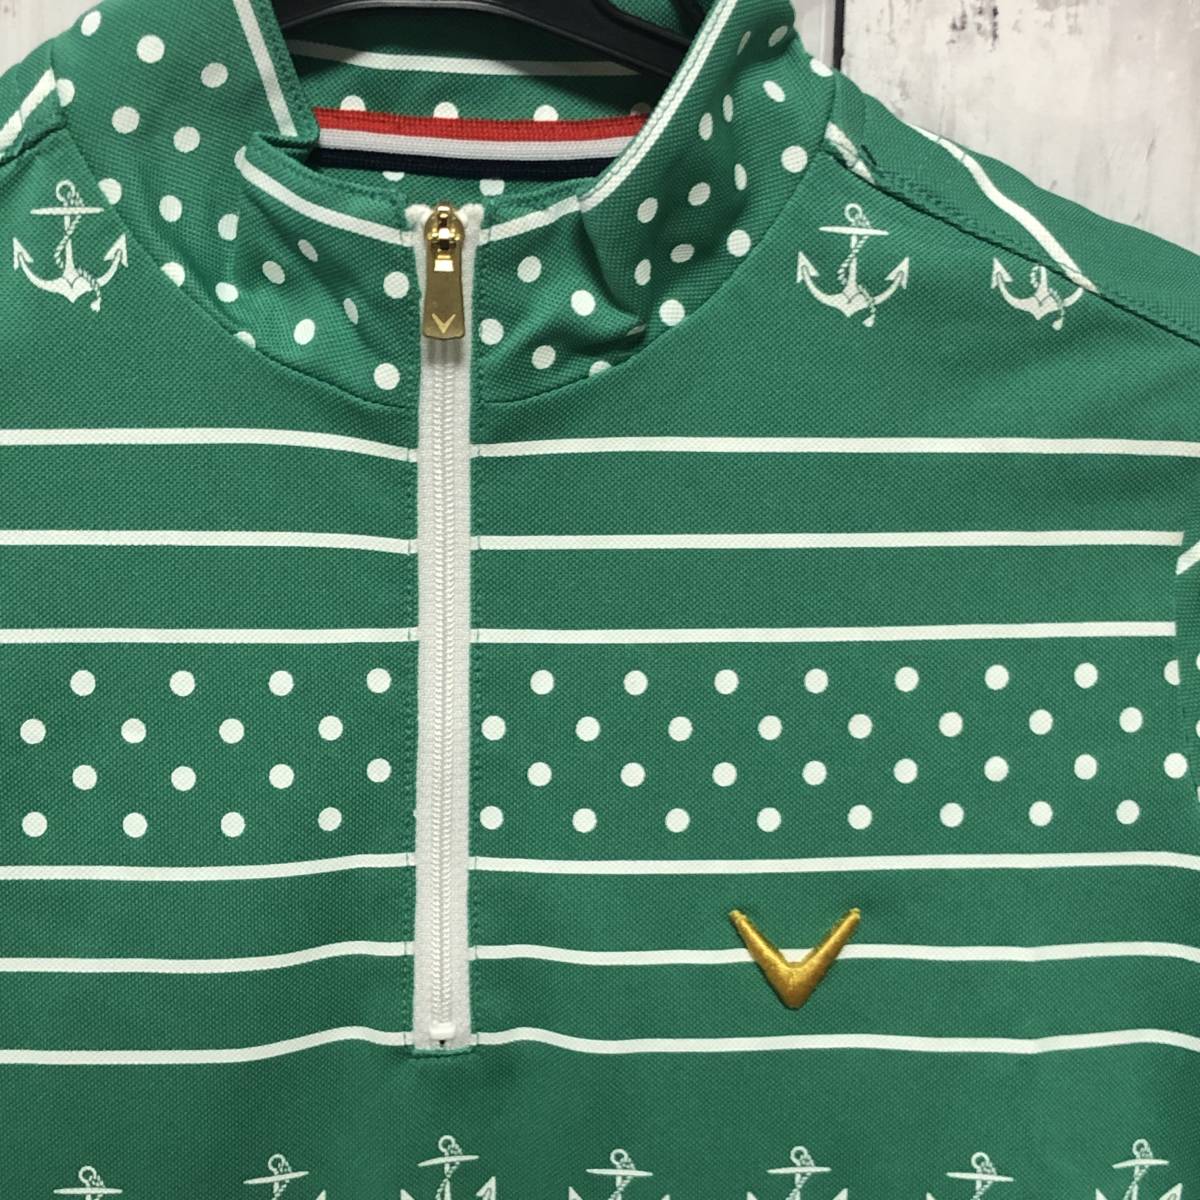 [Callaway] Callaway Golf Golf одежда рубашка-поло с коротким рукавом половина Zip оттенок зеленого женский M б/у прекрасный товар! бесплатная доставка!